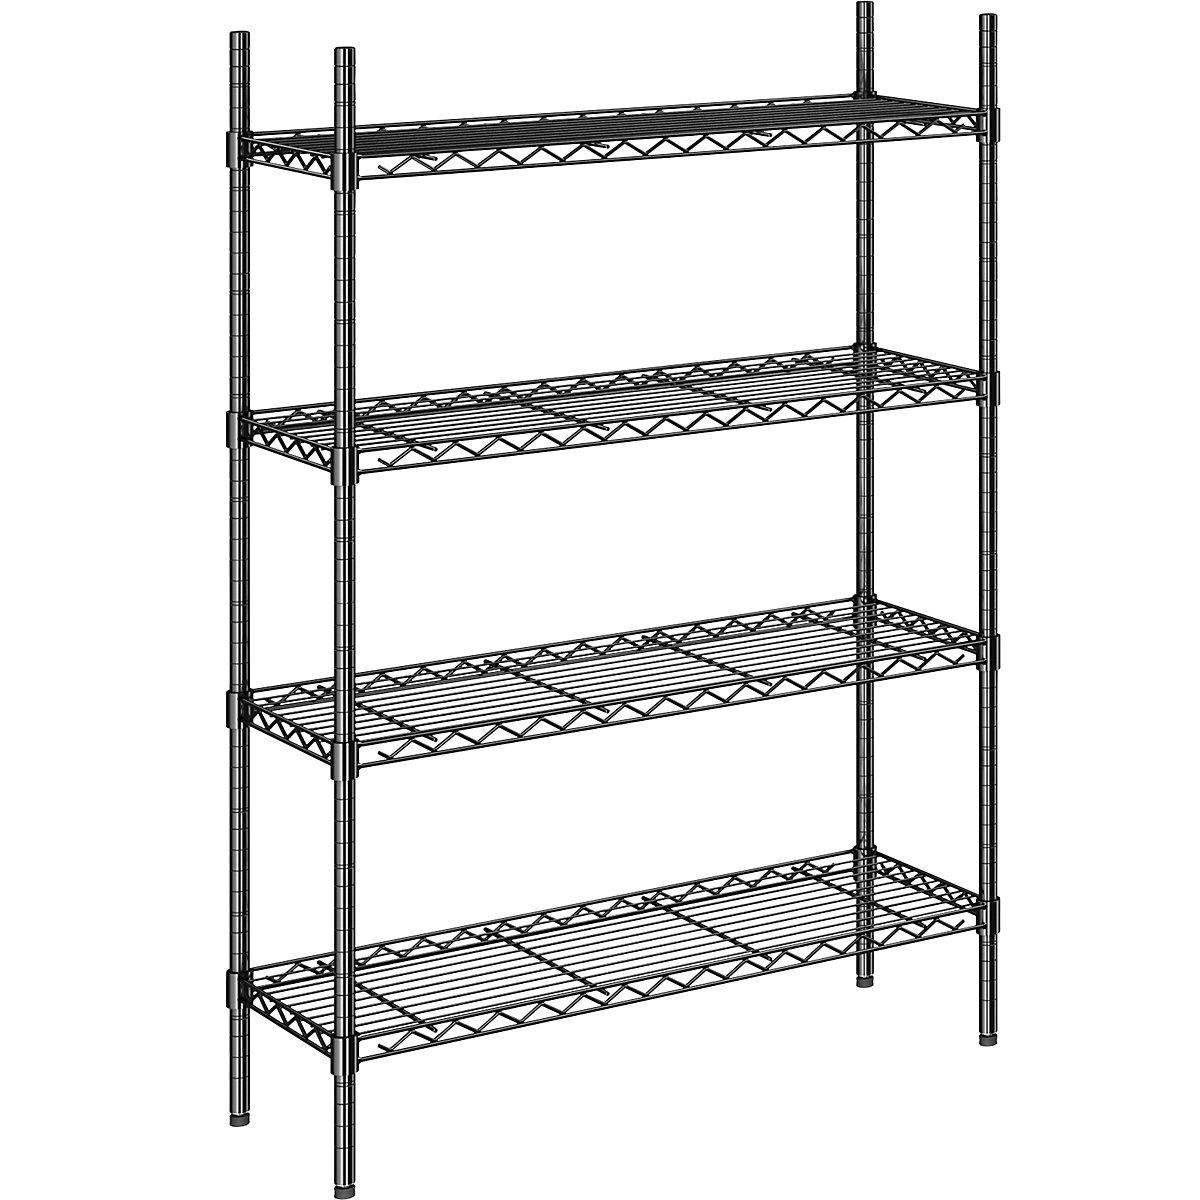 Steel wire mesh shelf unit